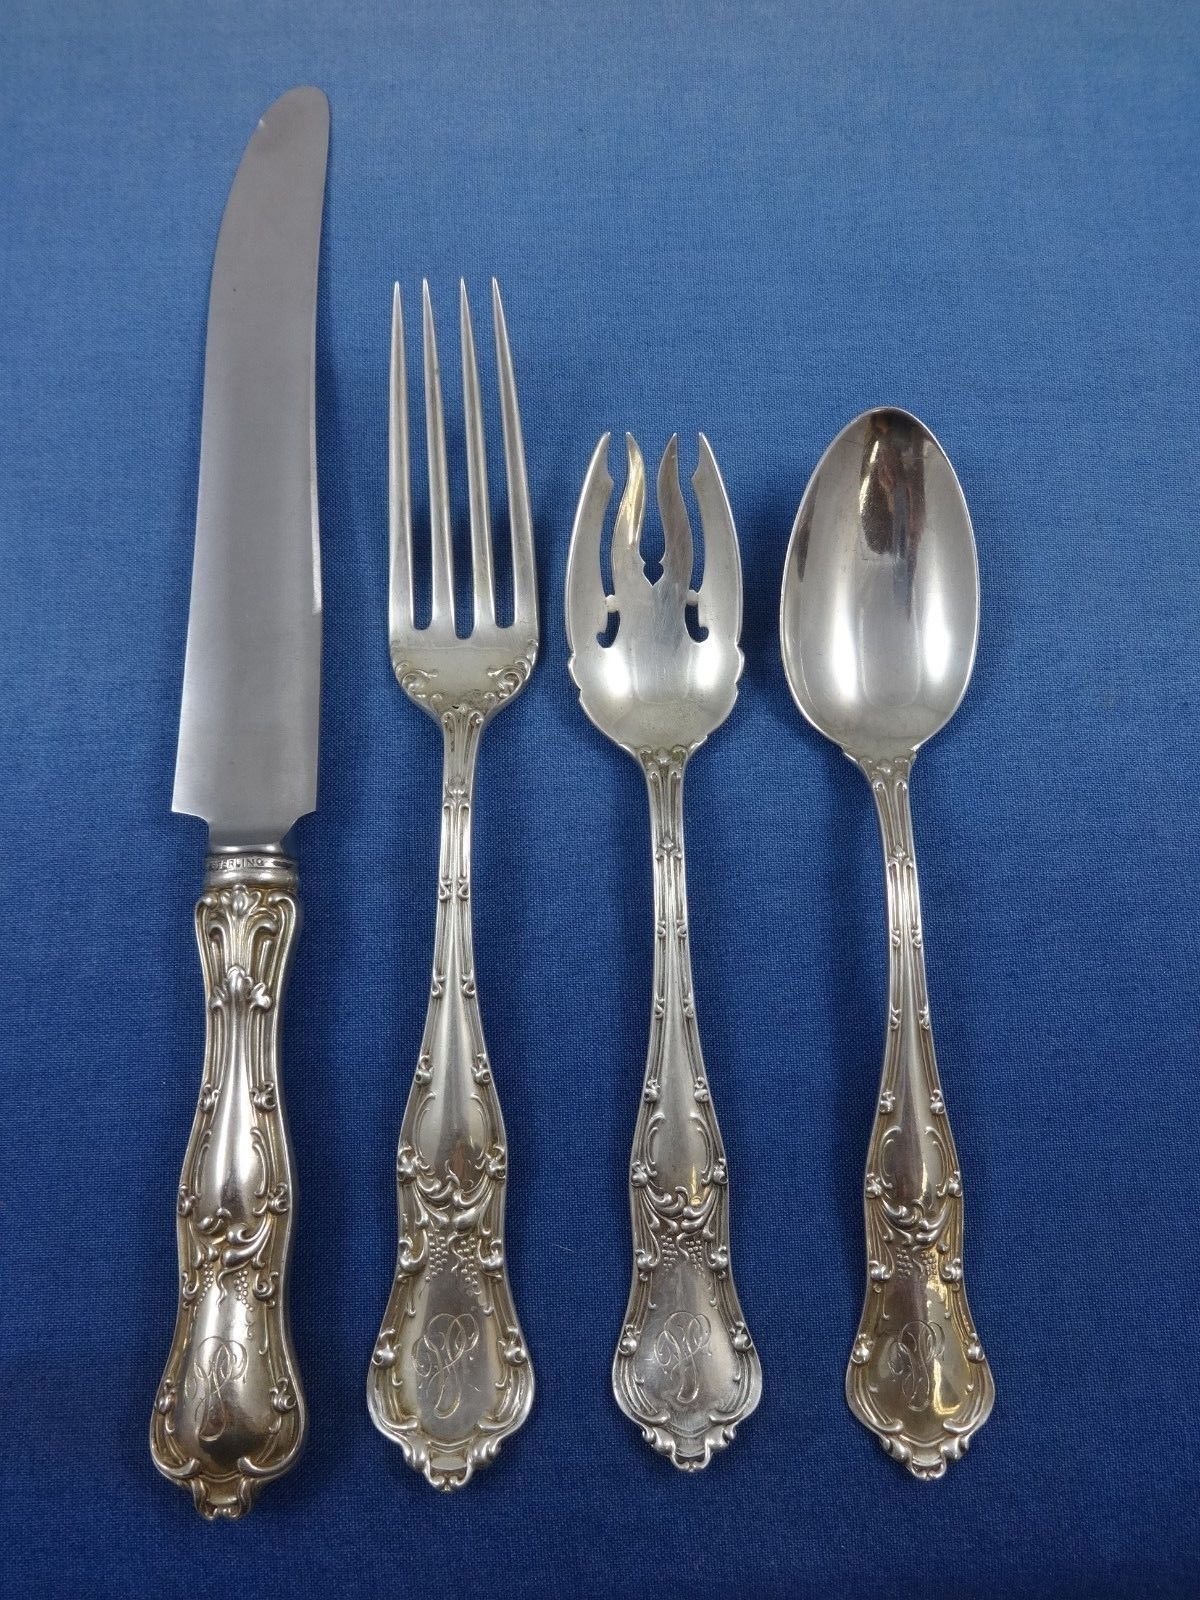 gothic cutlery set